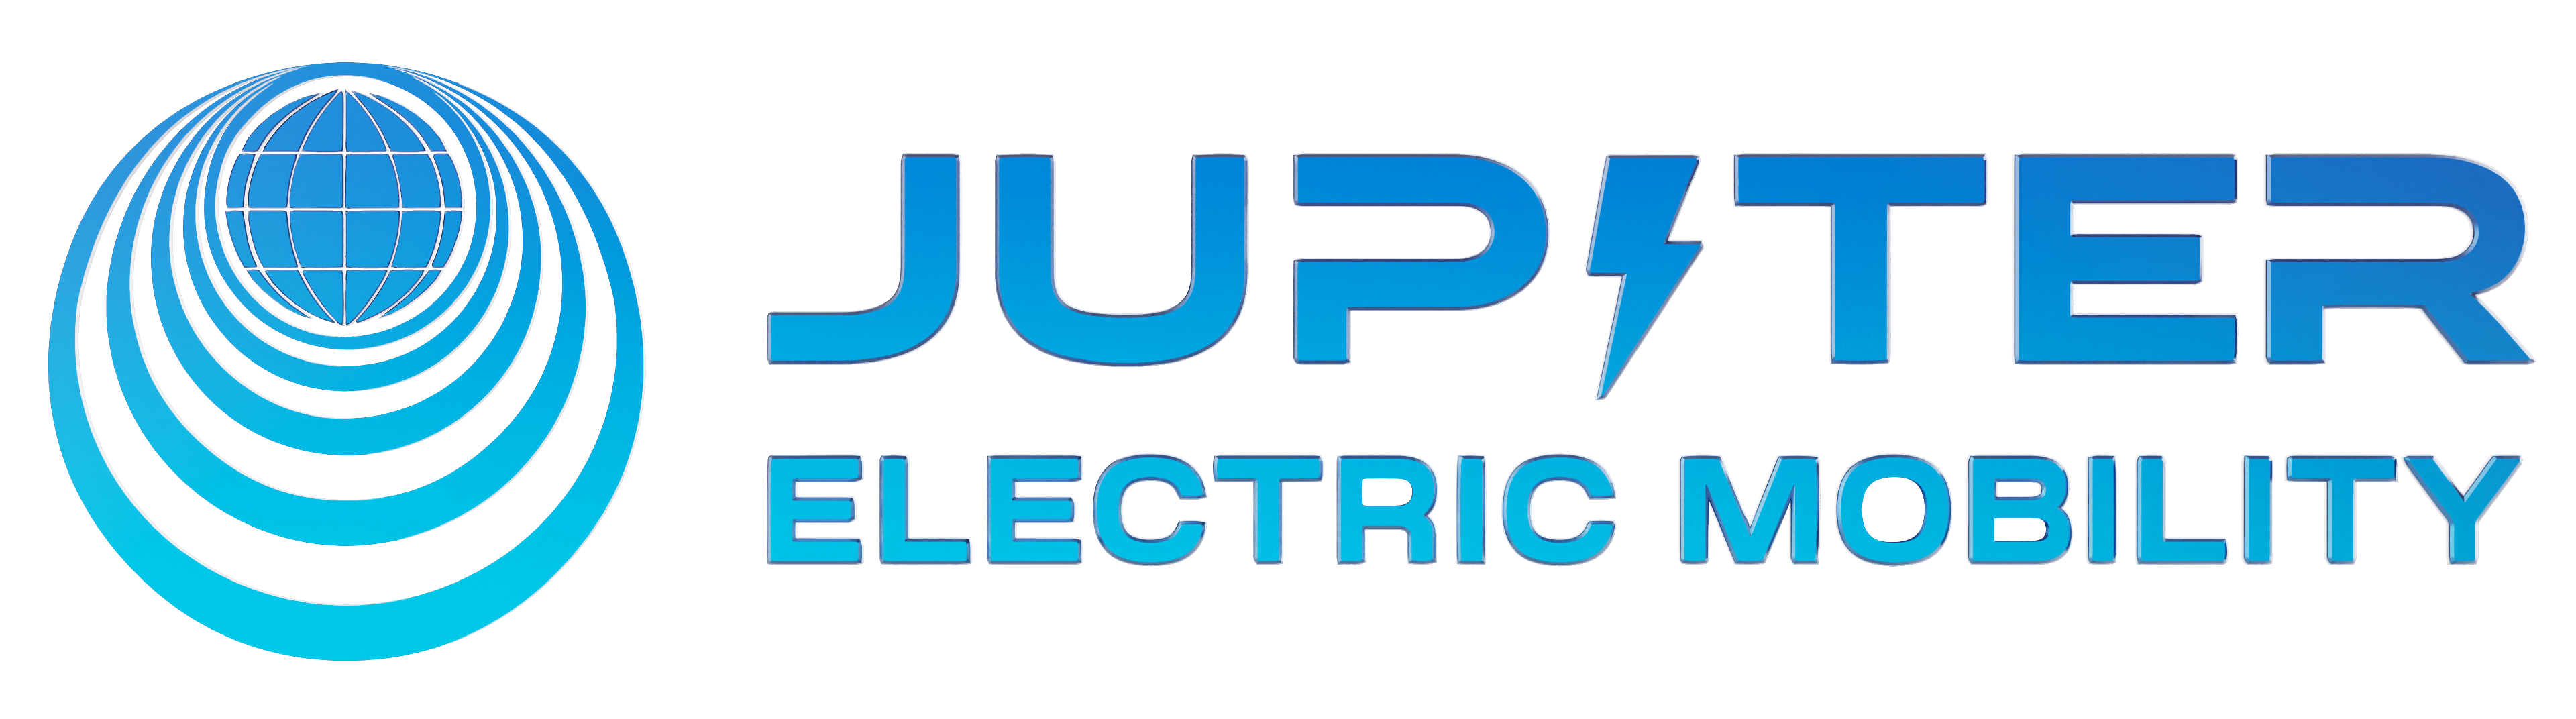 Jupiter Electric Mobility Pvt. Ltd.